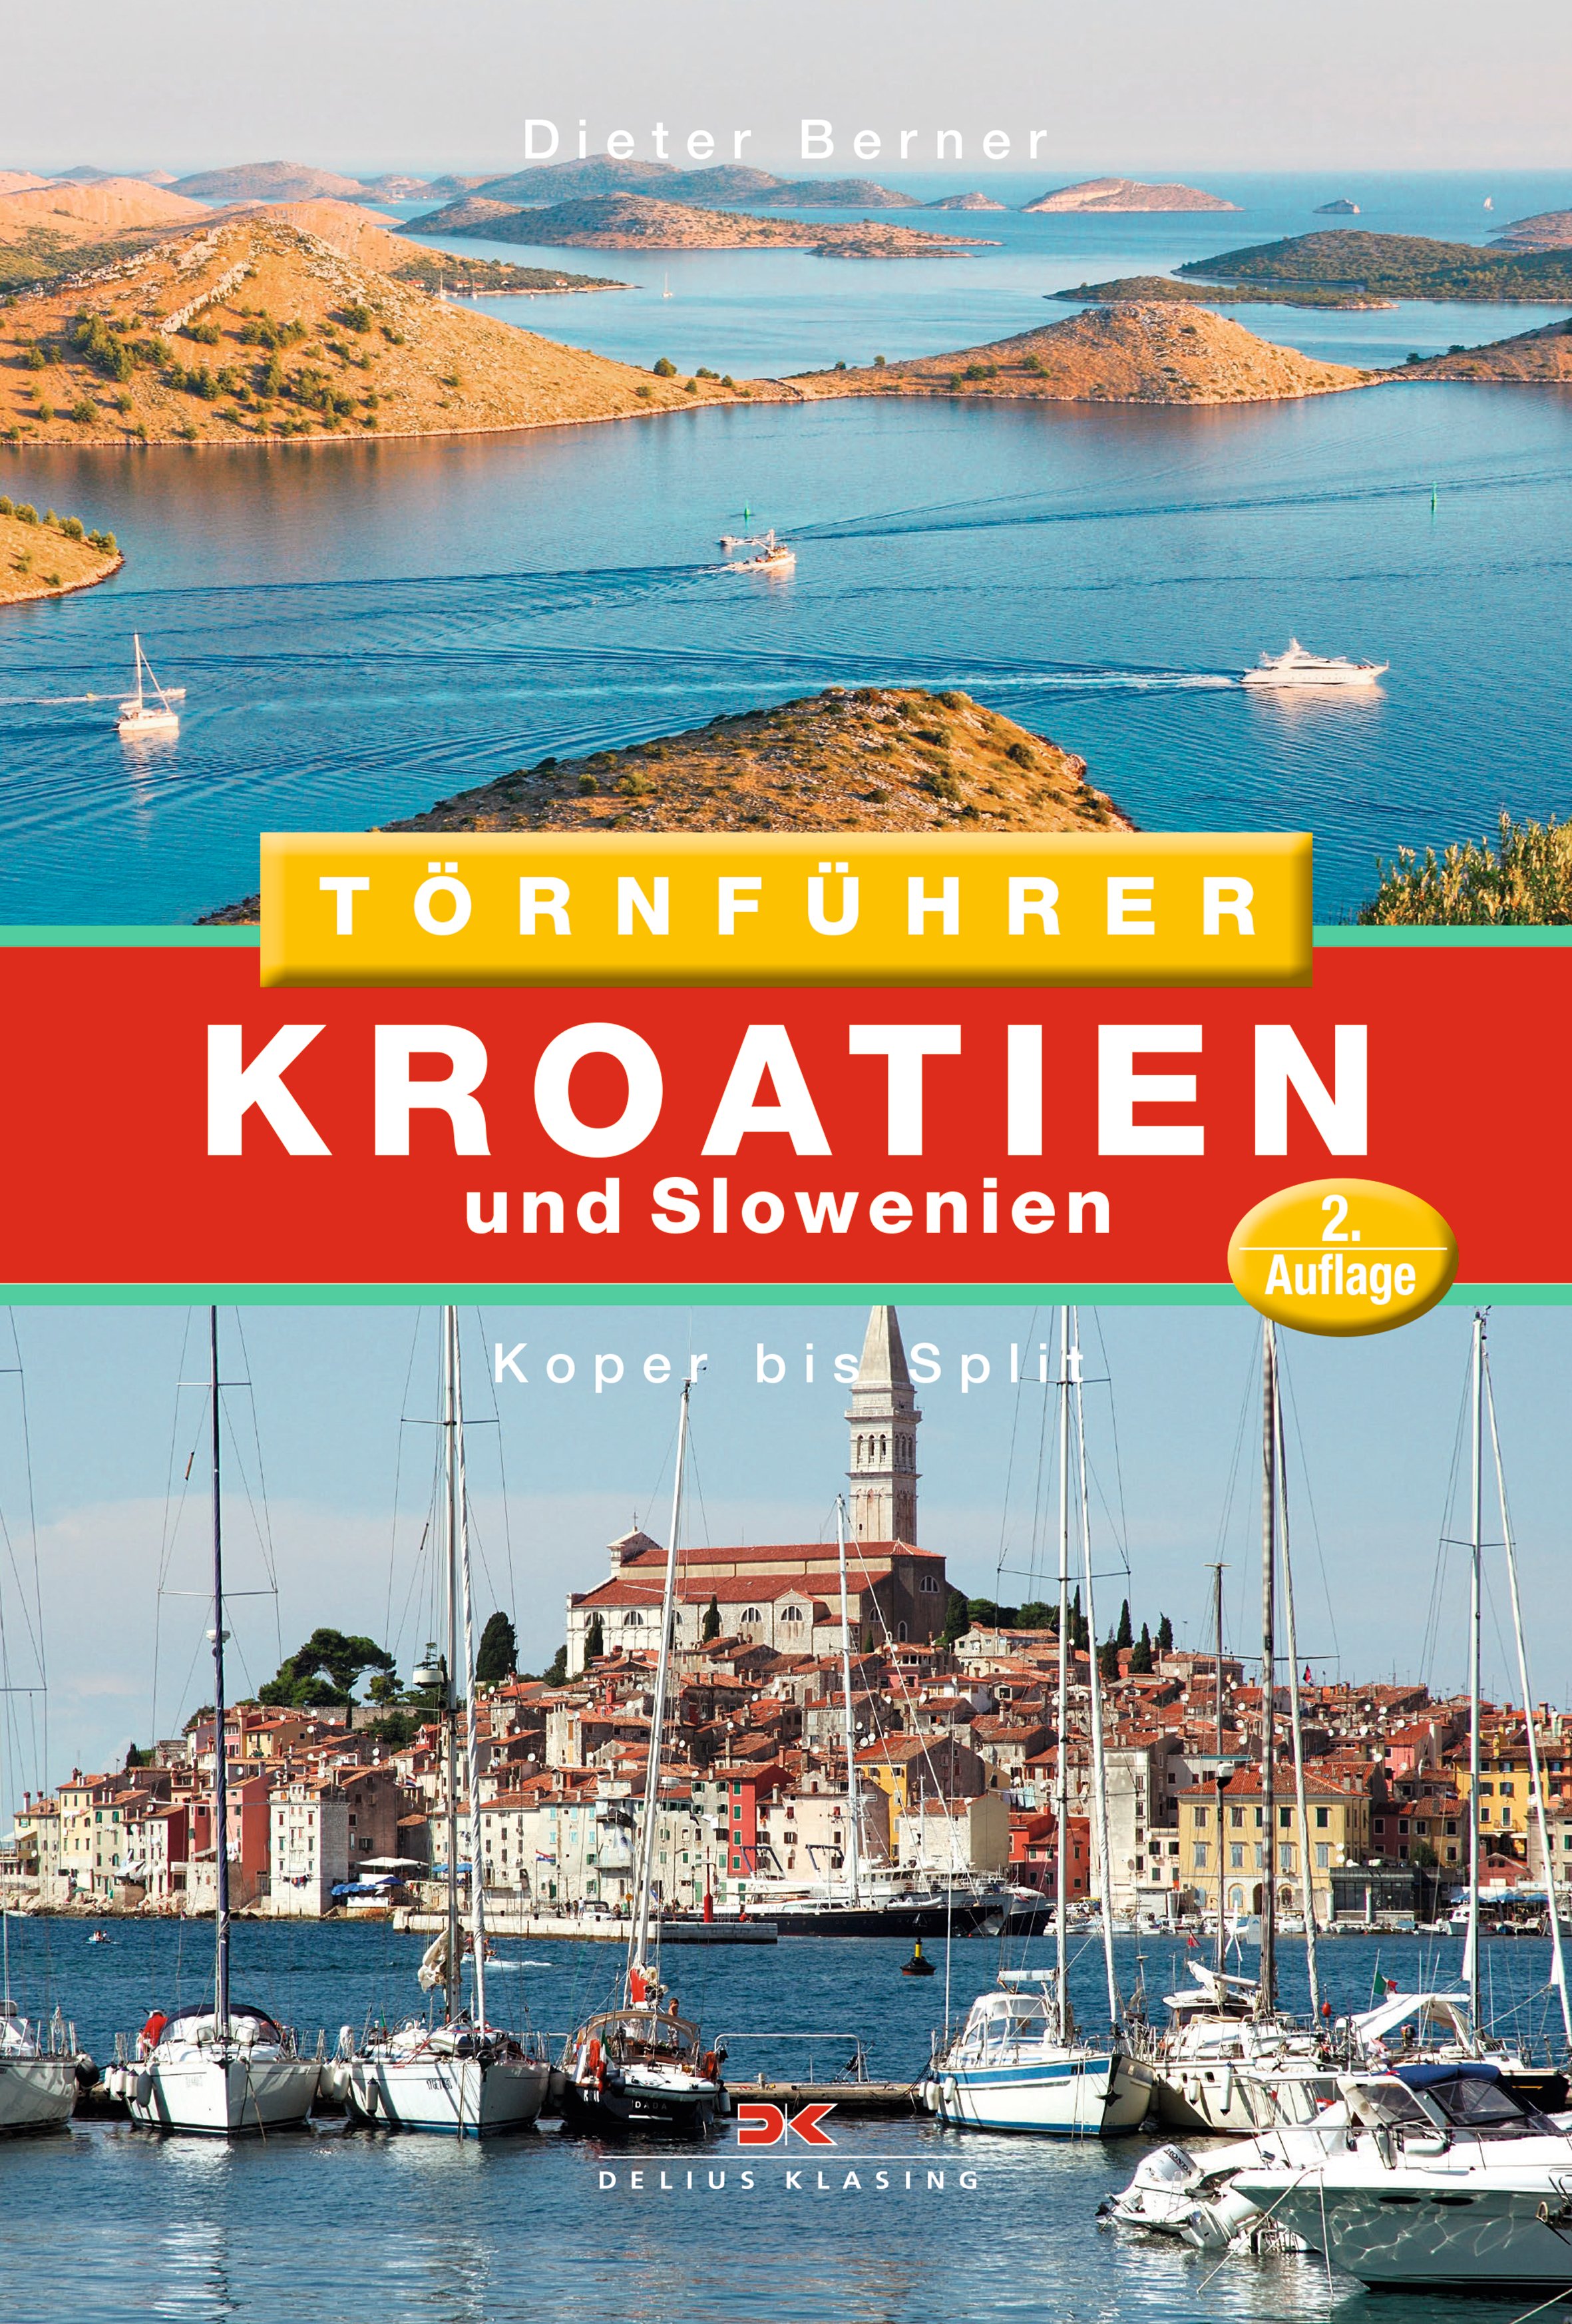 Kroatien und Slowenien, Koper bis Split, 2.Auflage